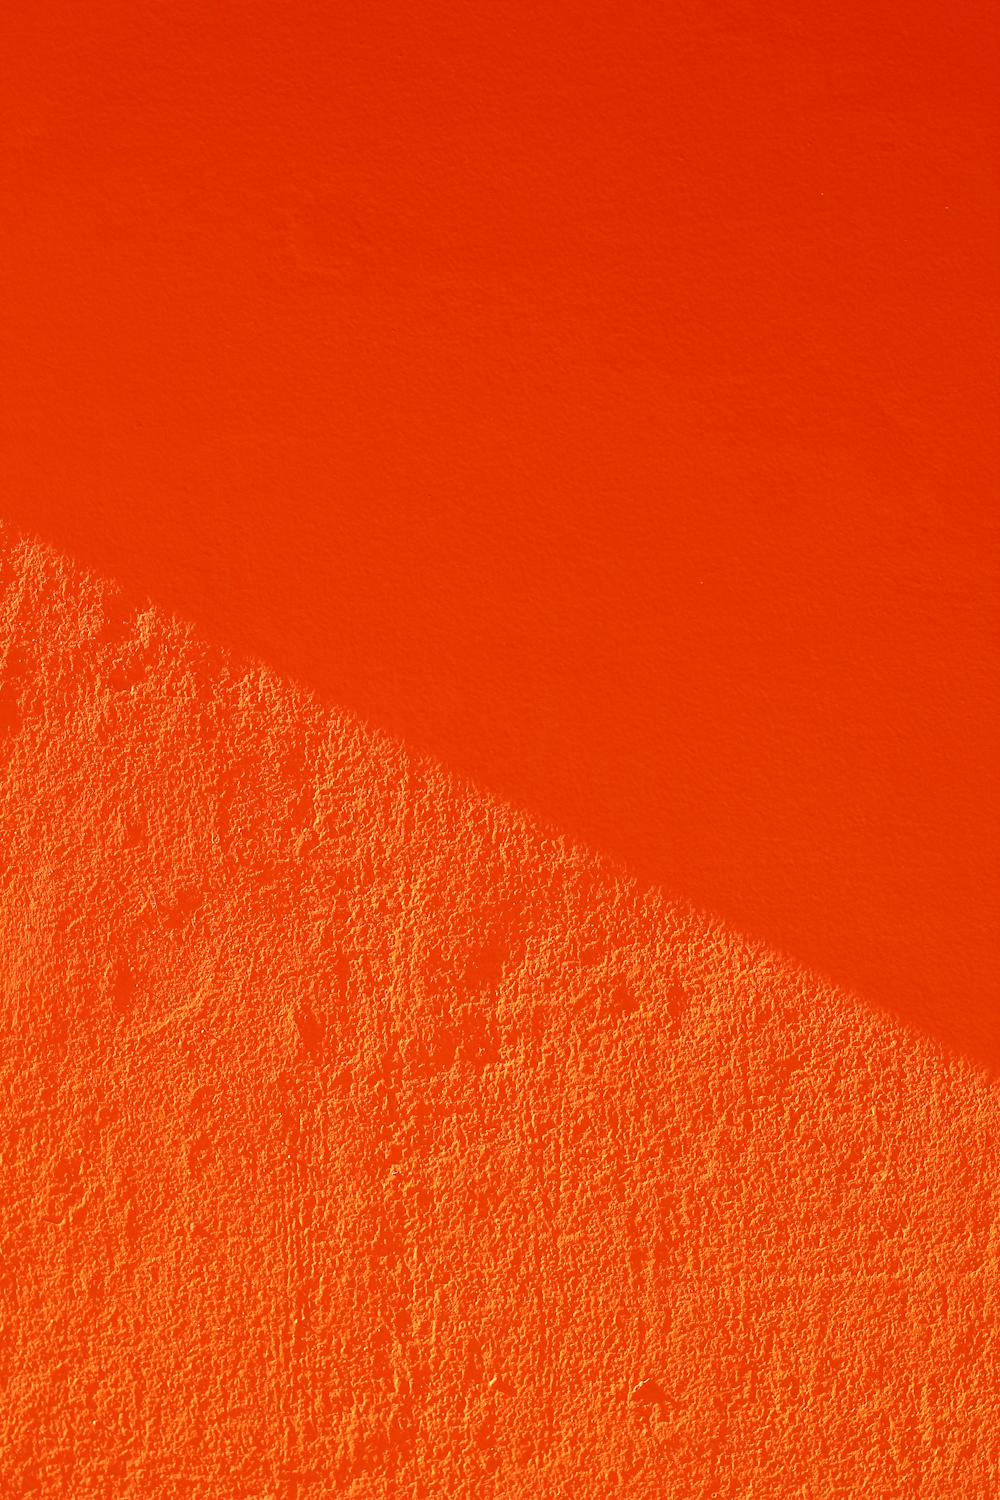 Màu cam là một màu sắc ấm áp và rực rỡ, mang đến cho bạn cảm giác năng động và sôi động. Hãy xem hình ảnh Màu cam để thấy sự độc đáo và rực rỡ của loại màu này.